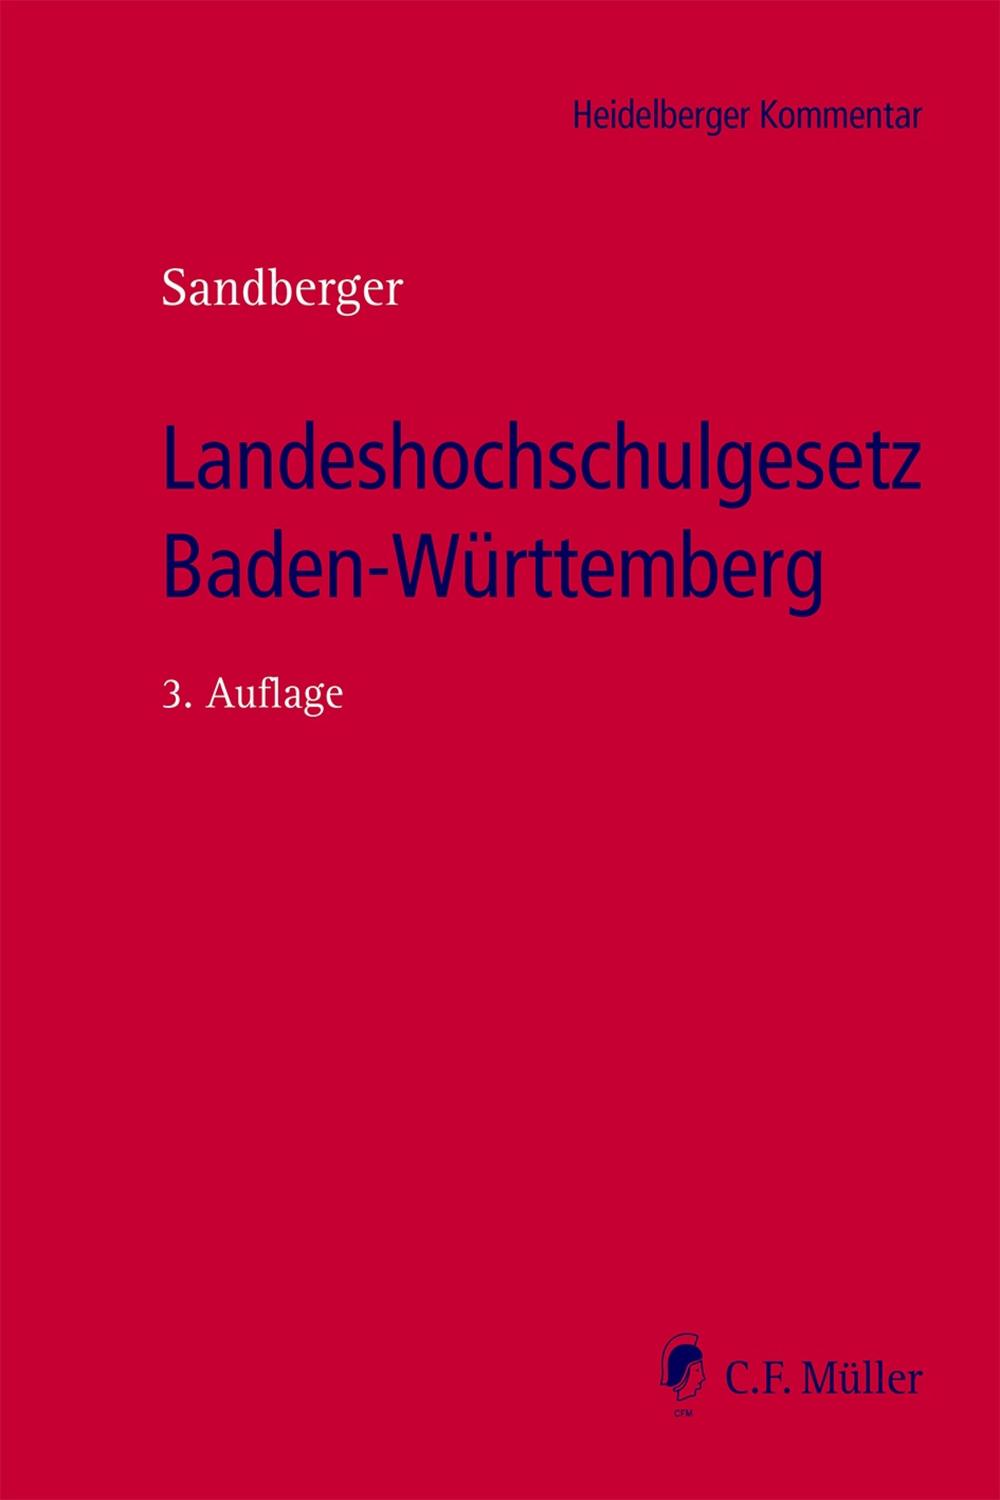 Landeshochschulgesetz Baden-Württemberg - Georg Sandberger, Sandberger